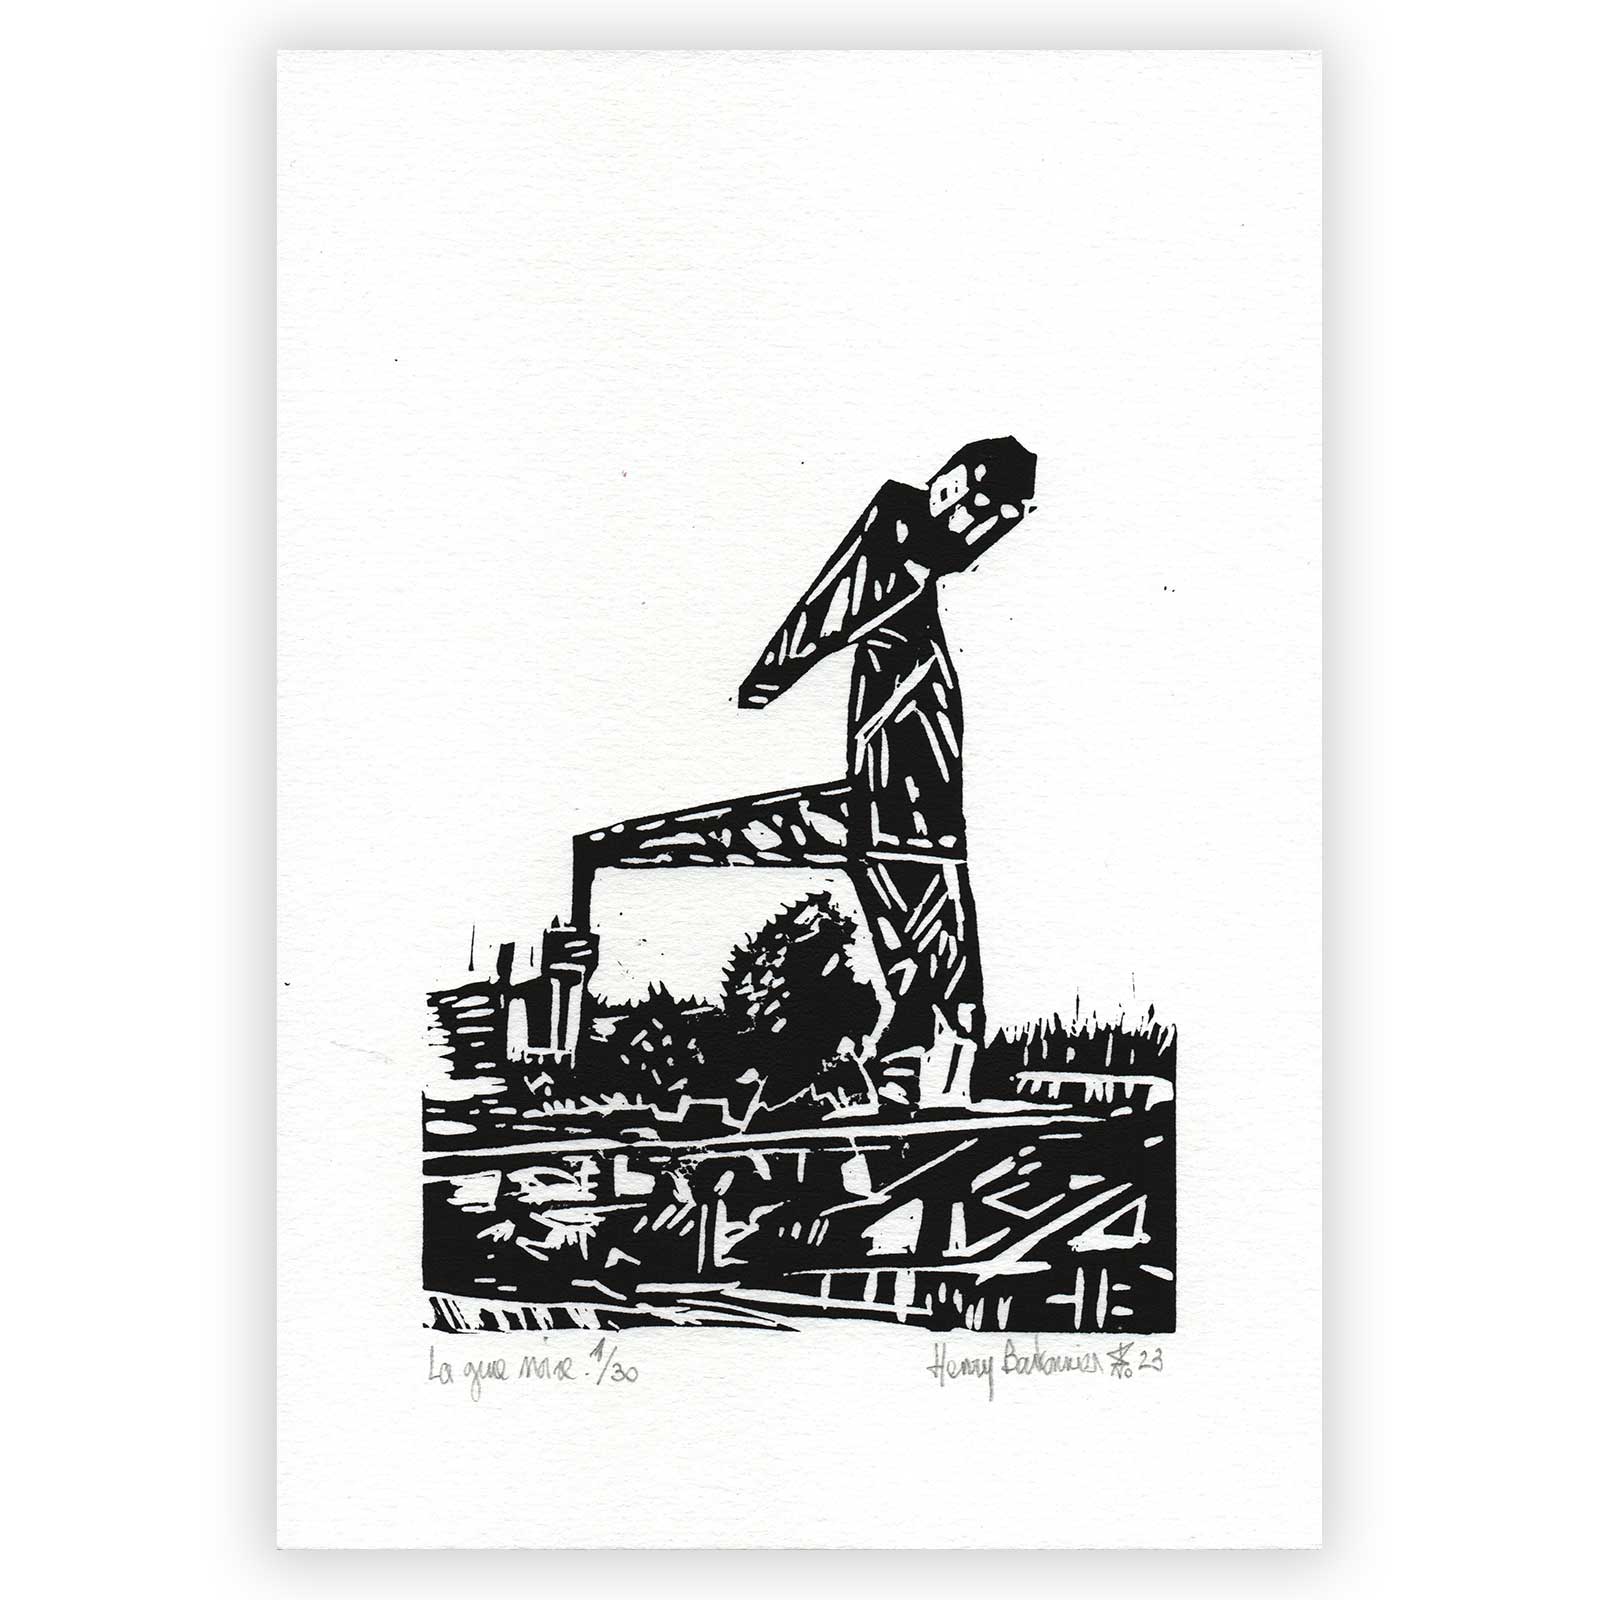 Découvrez "La Grue Noire" par Henry Bartonnier, une linogravure inspirée de cet emblème de Nantes. Œuvre sur papier A5.